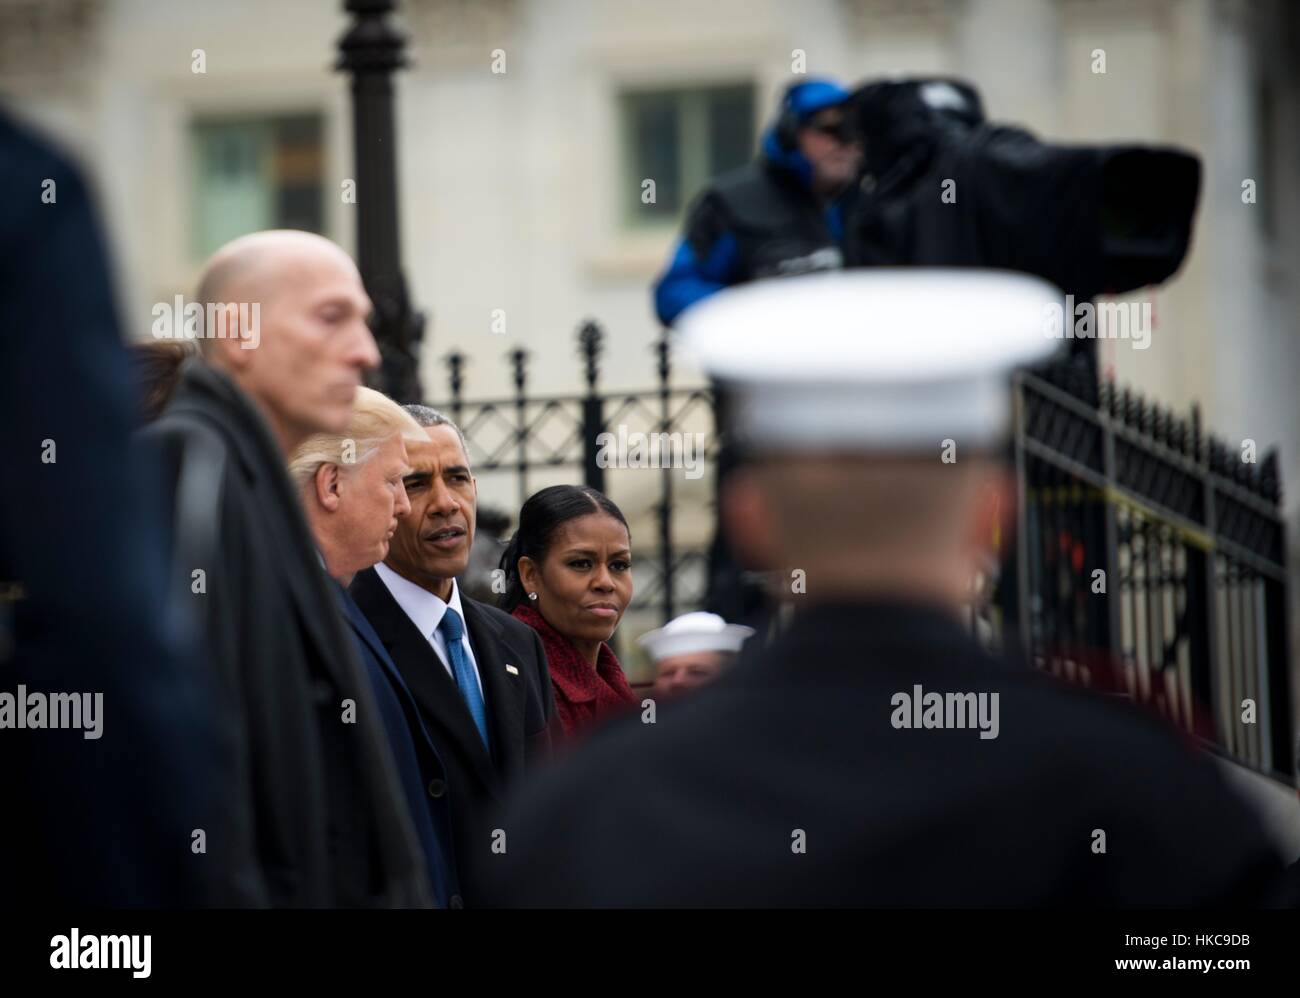 US-Präsident Donald Trump, ehemaliger Präsident Barack Obama und ehemalige First Lady Michelle Obama stehen die U.S. Capitol Osten Schritte für die Abschiedszeremonie während der 58. Presidential Inauguration 20. Januar 2017 in Washington, DC. Stockfoto